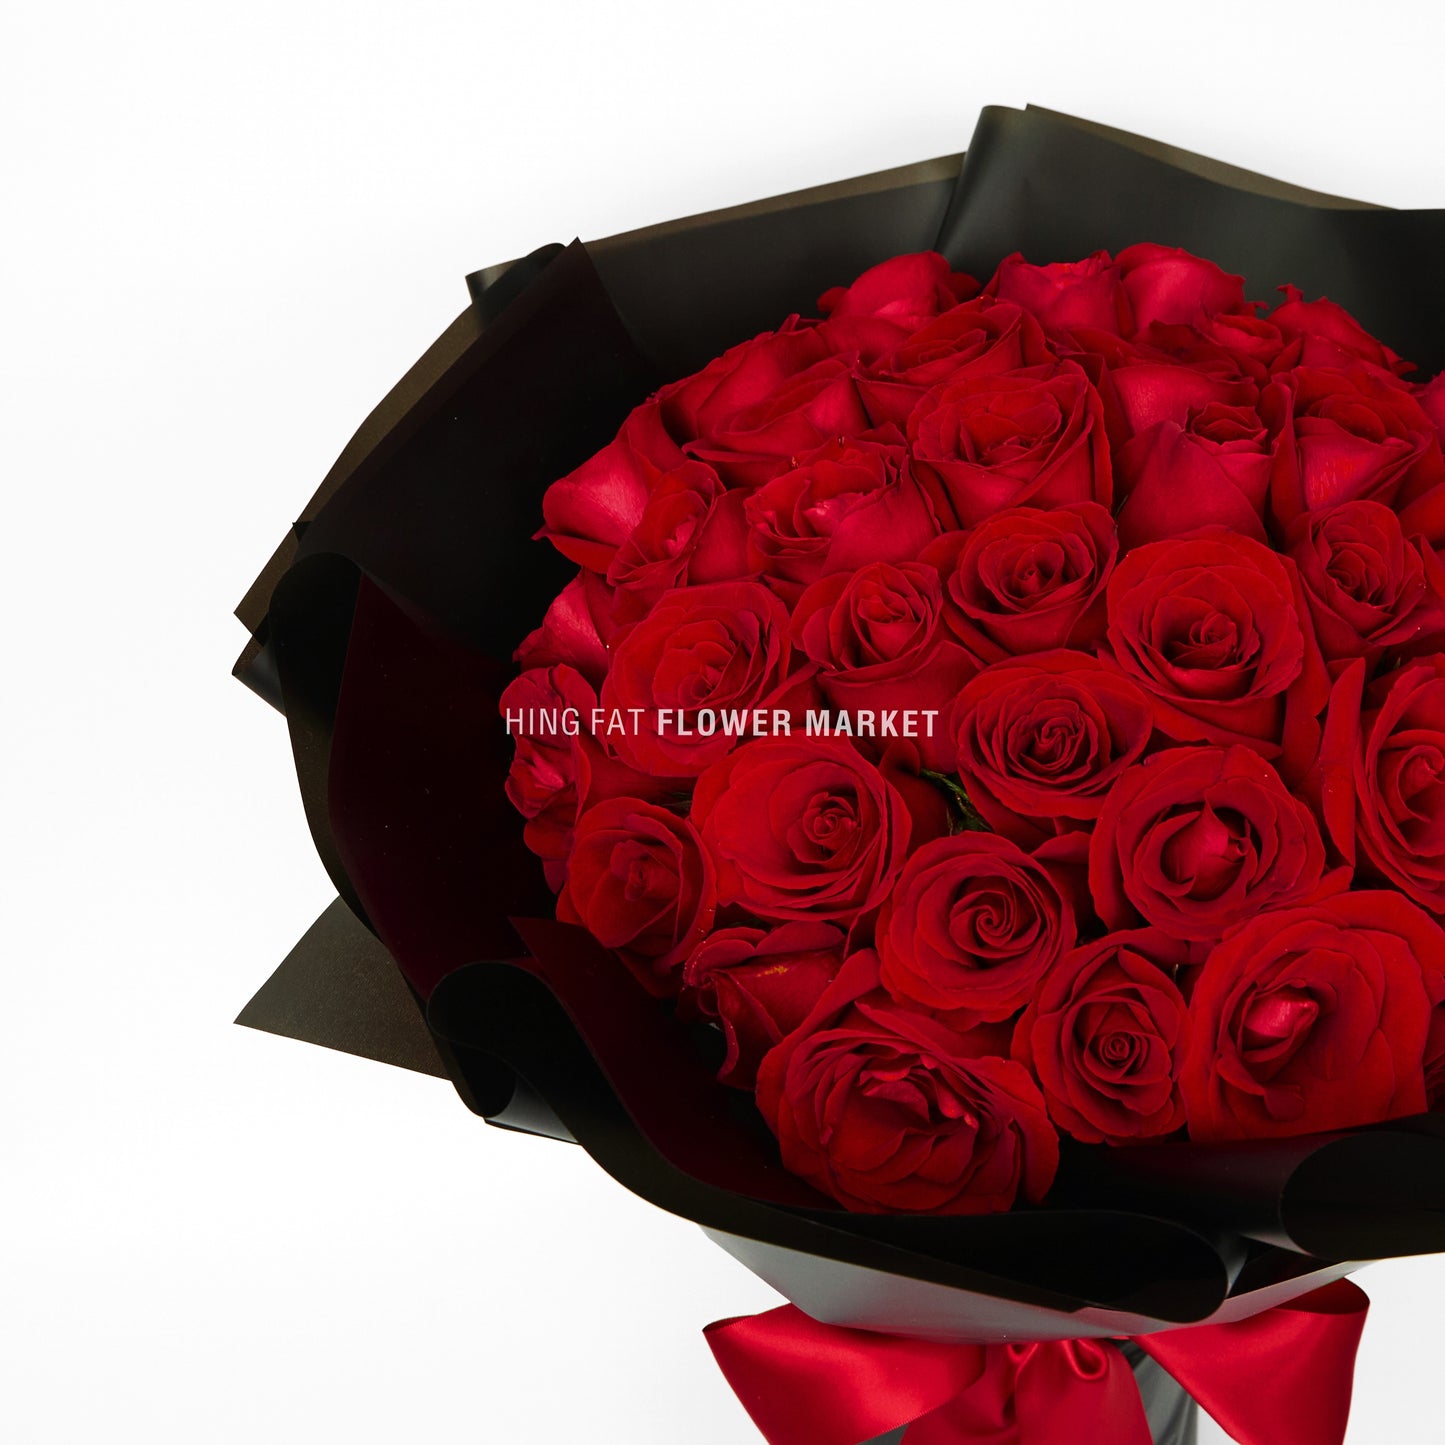 49支玫瑰花束 49 stems of red rose bouquet